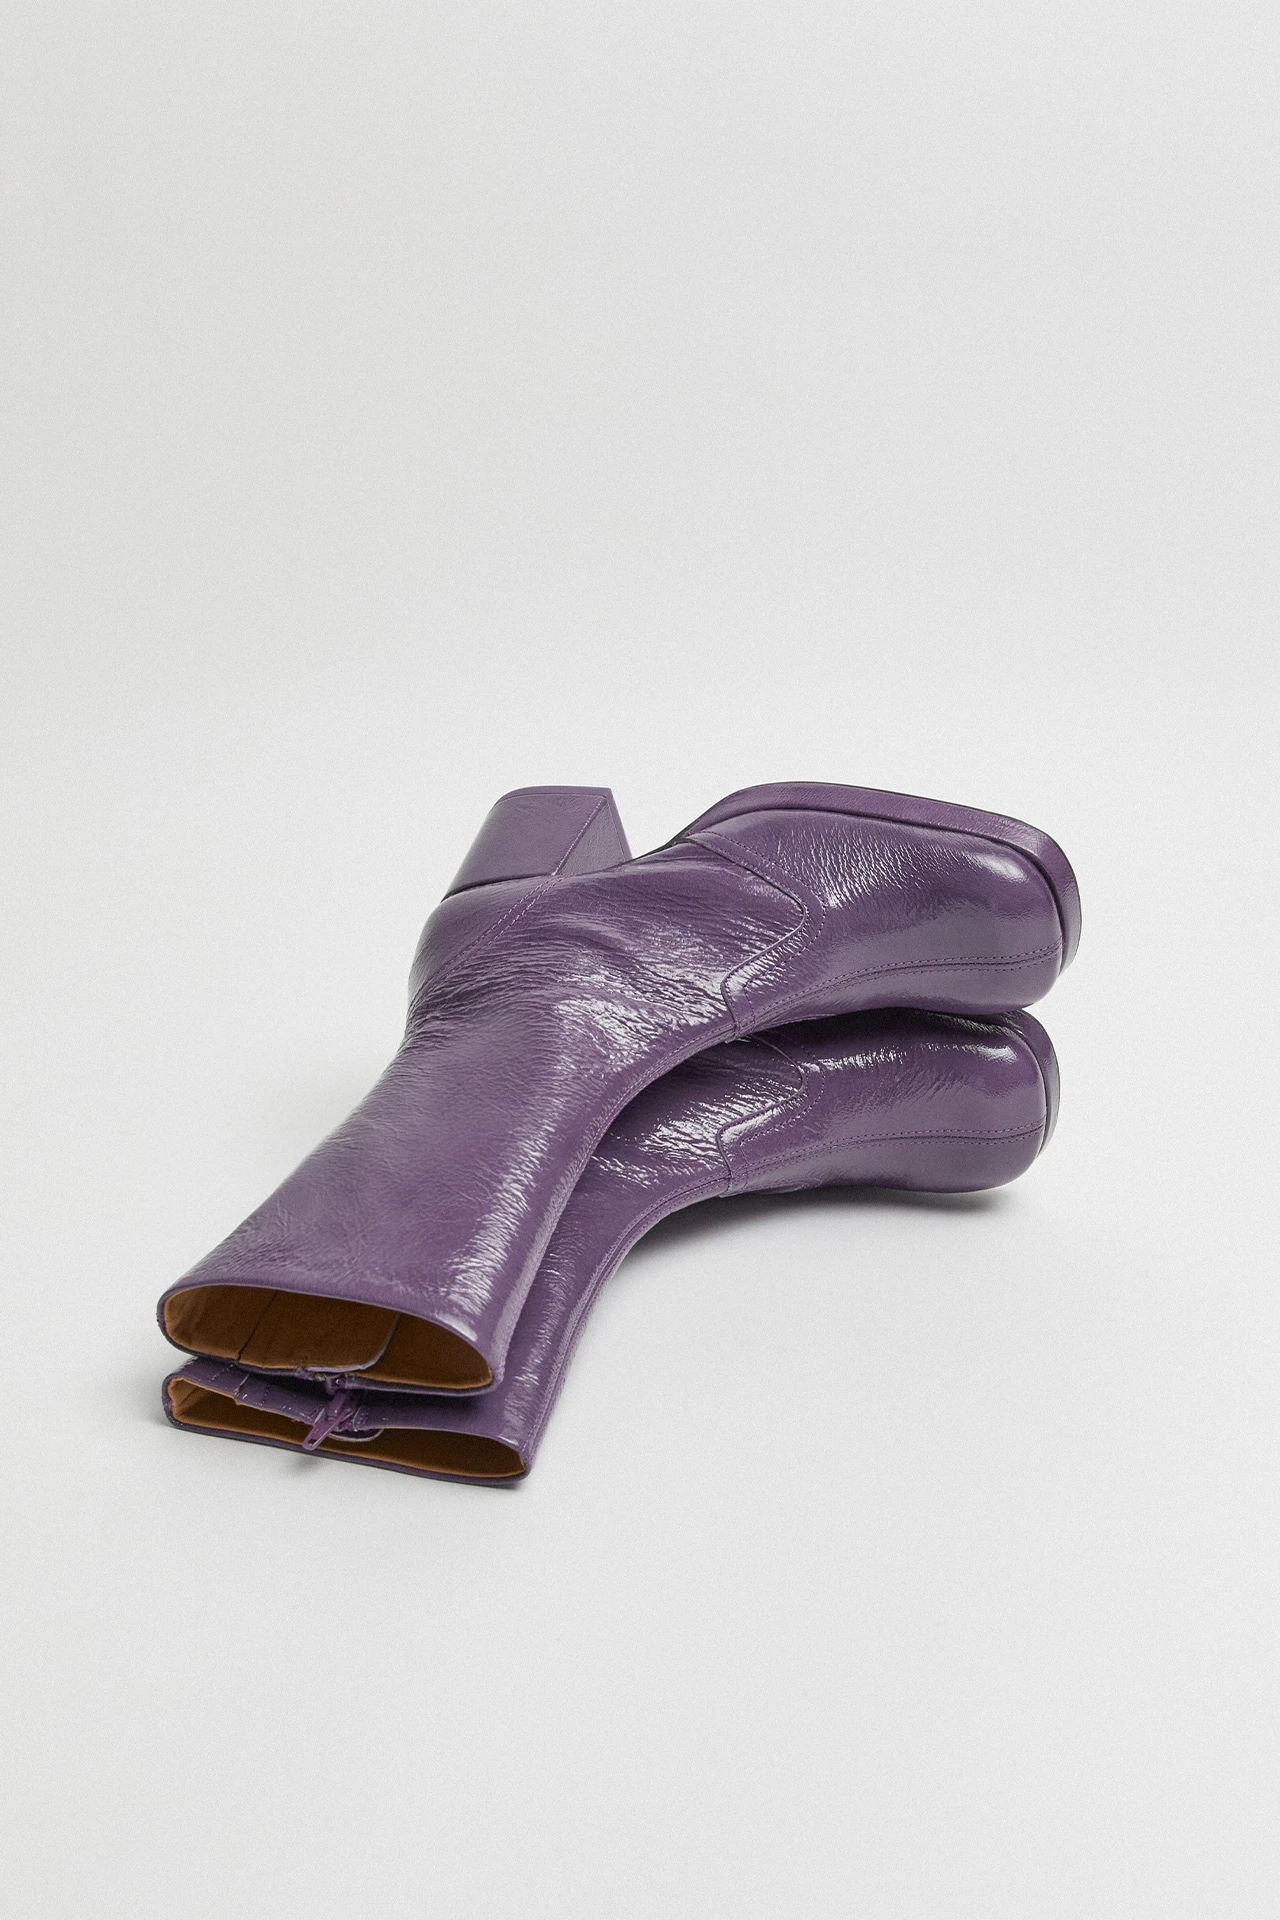 Miista-cass-purple-boots-03